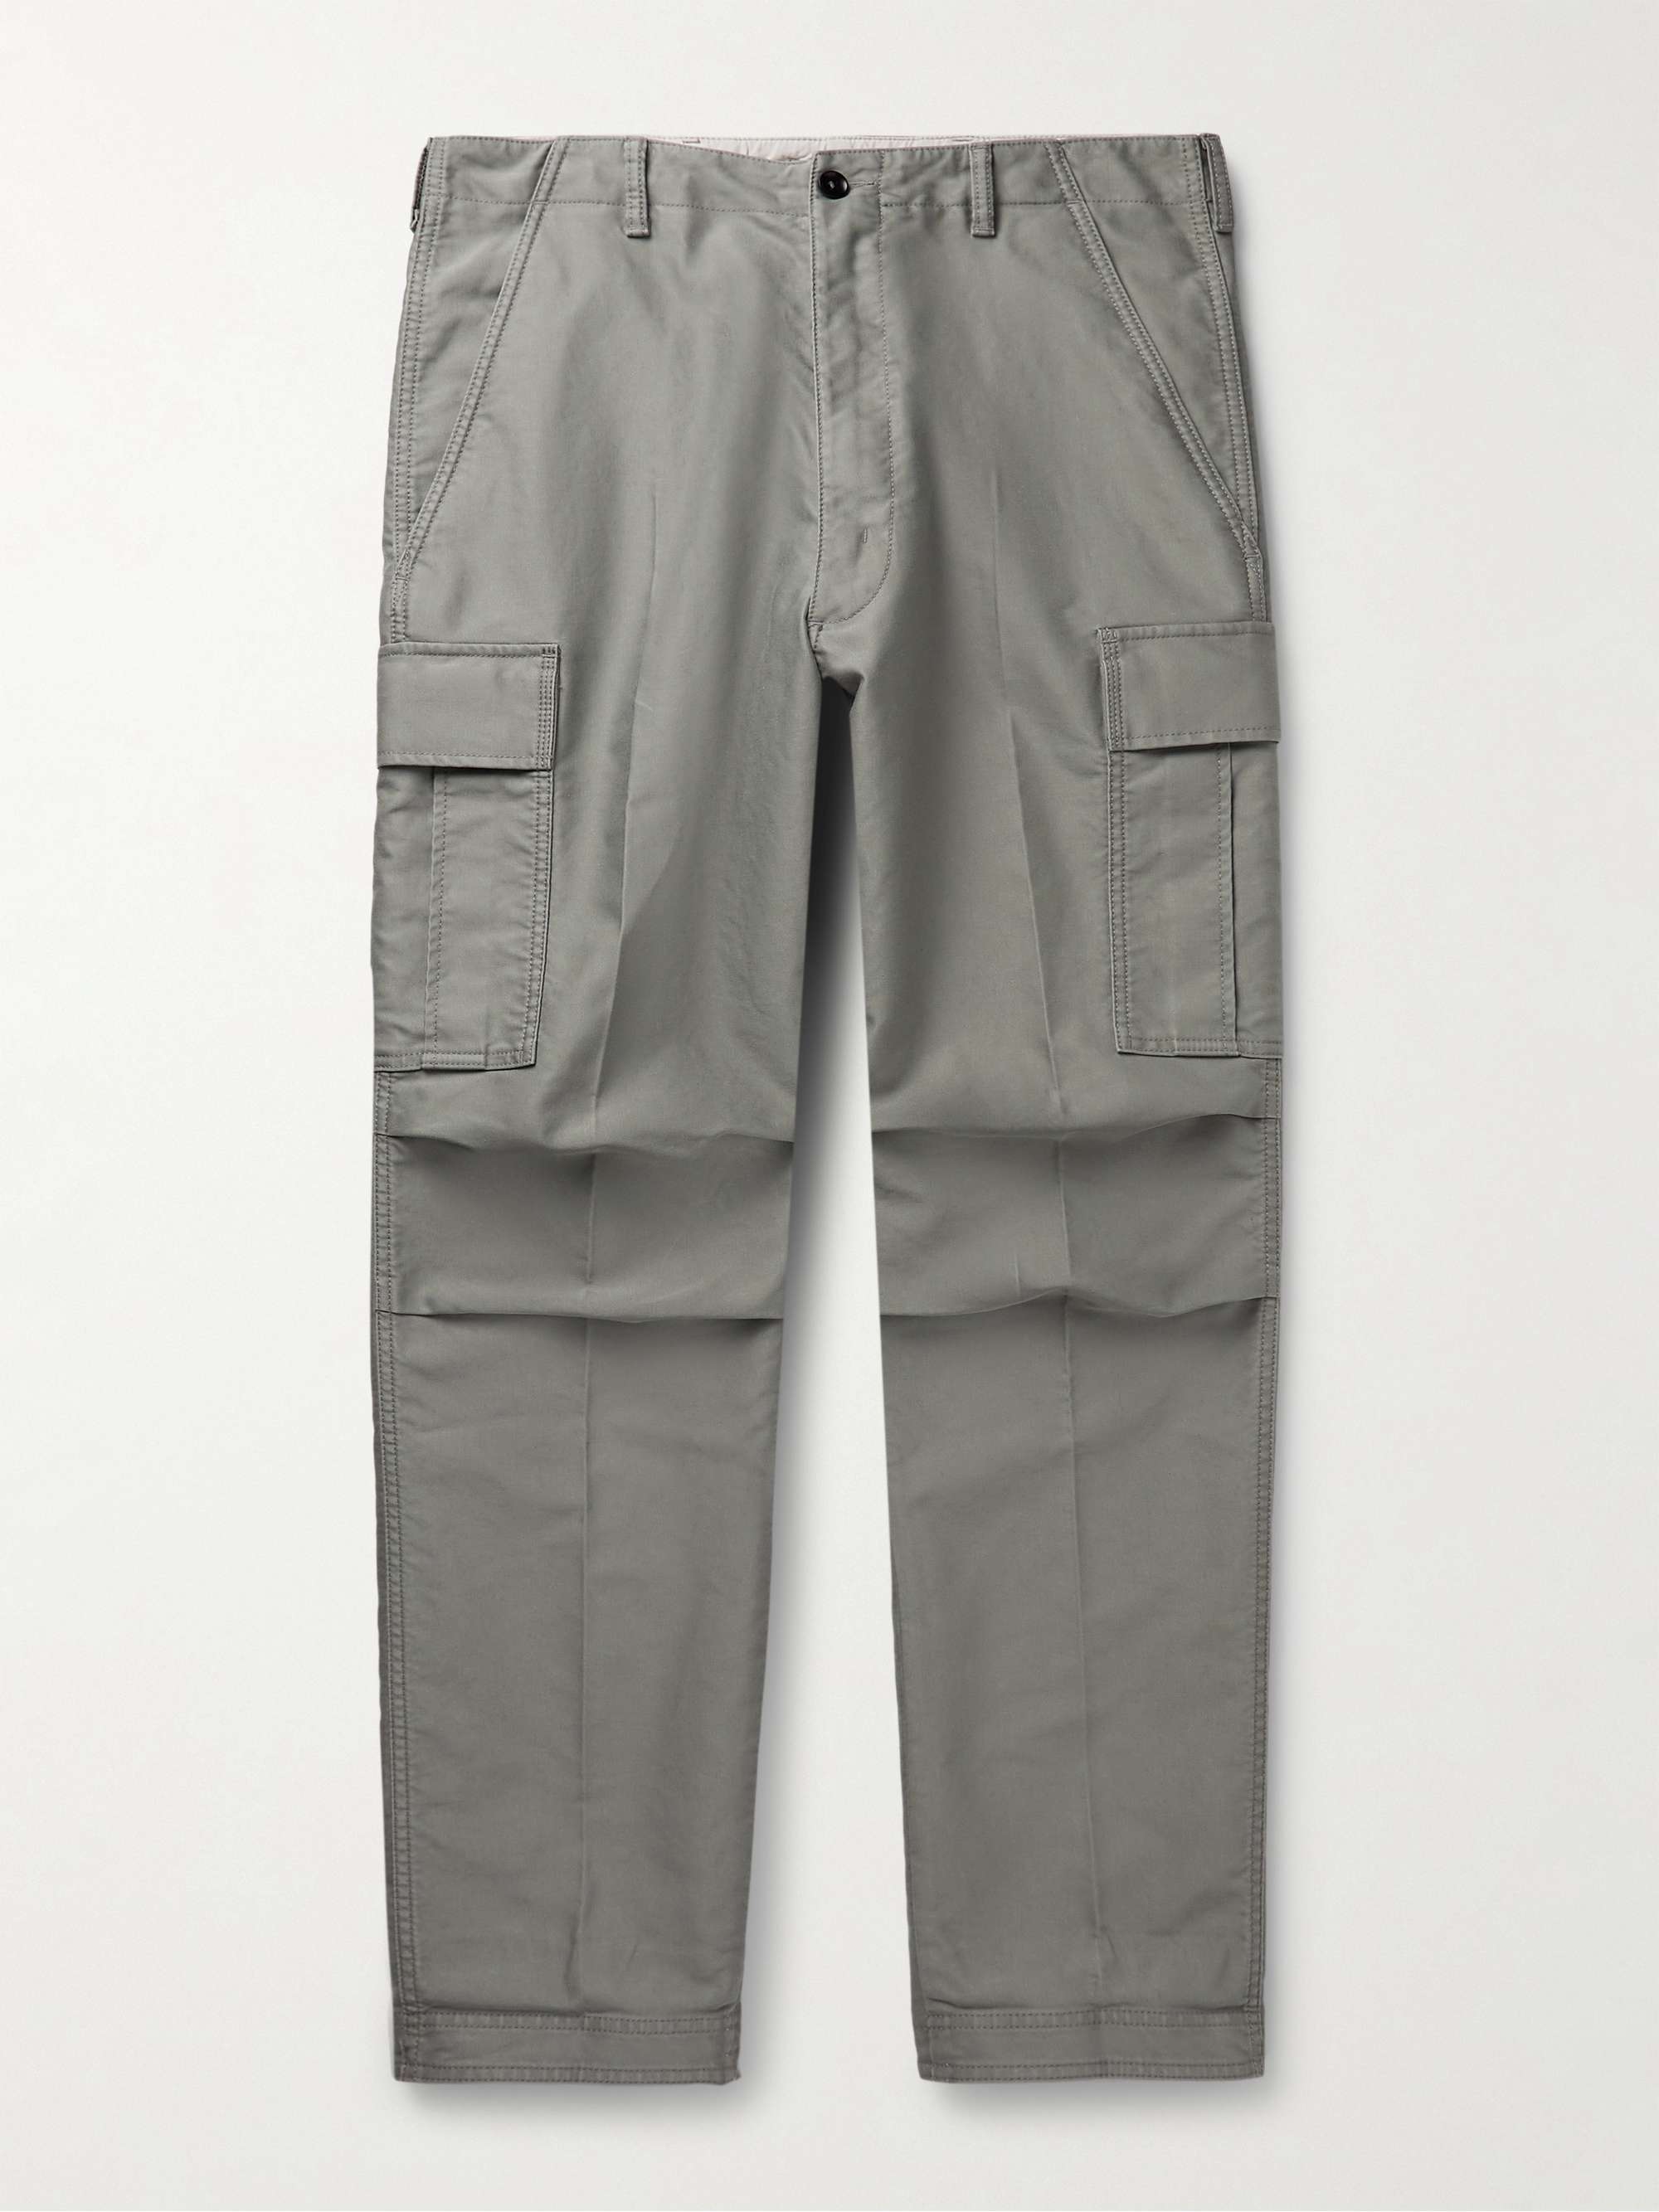 TOM FORD Straight-Leg Cotton Cargo Trousers for Men | MR PORTER